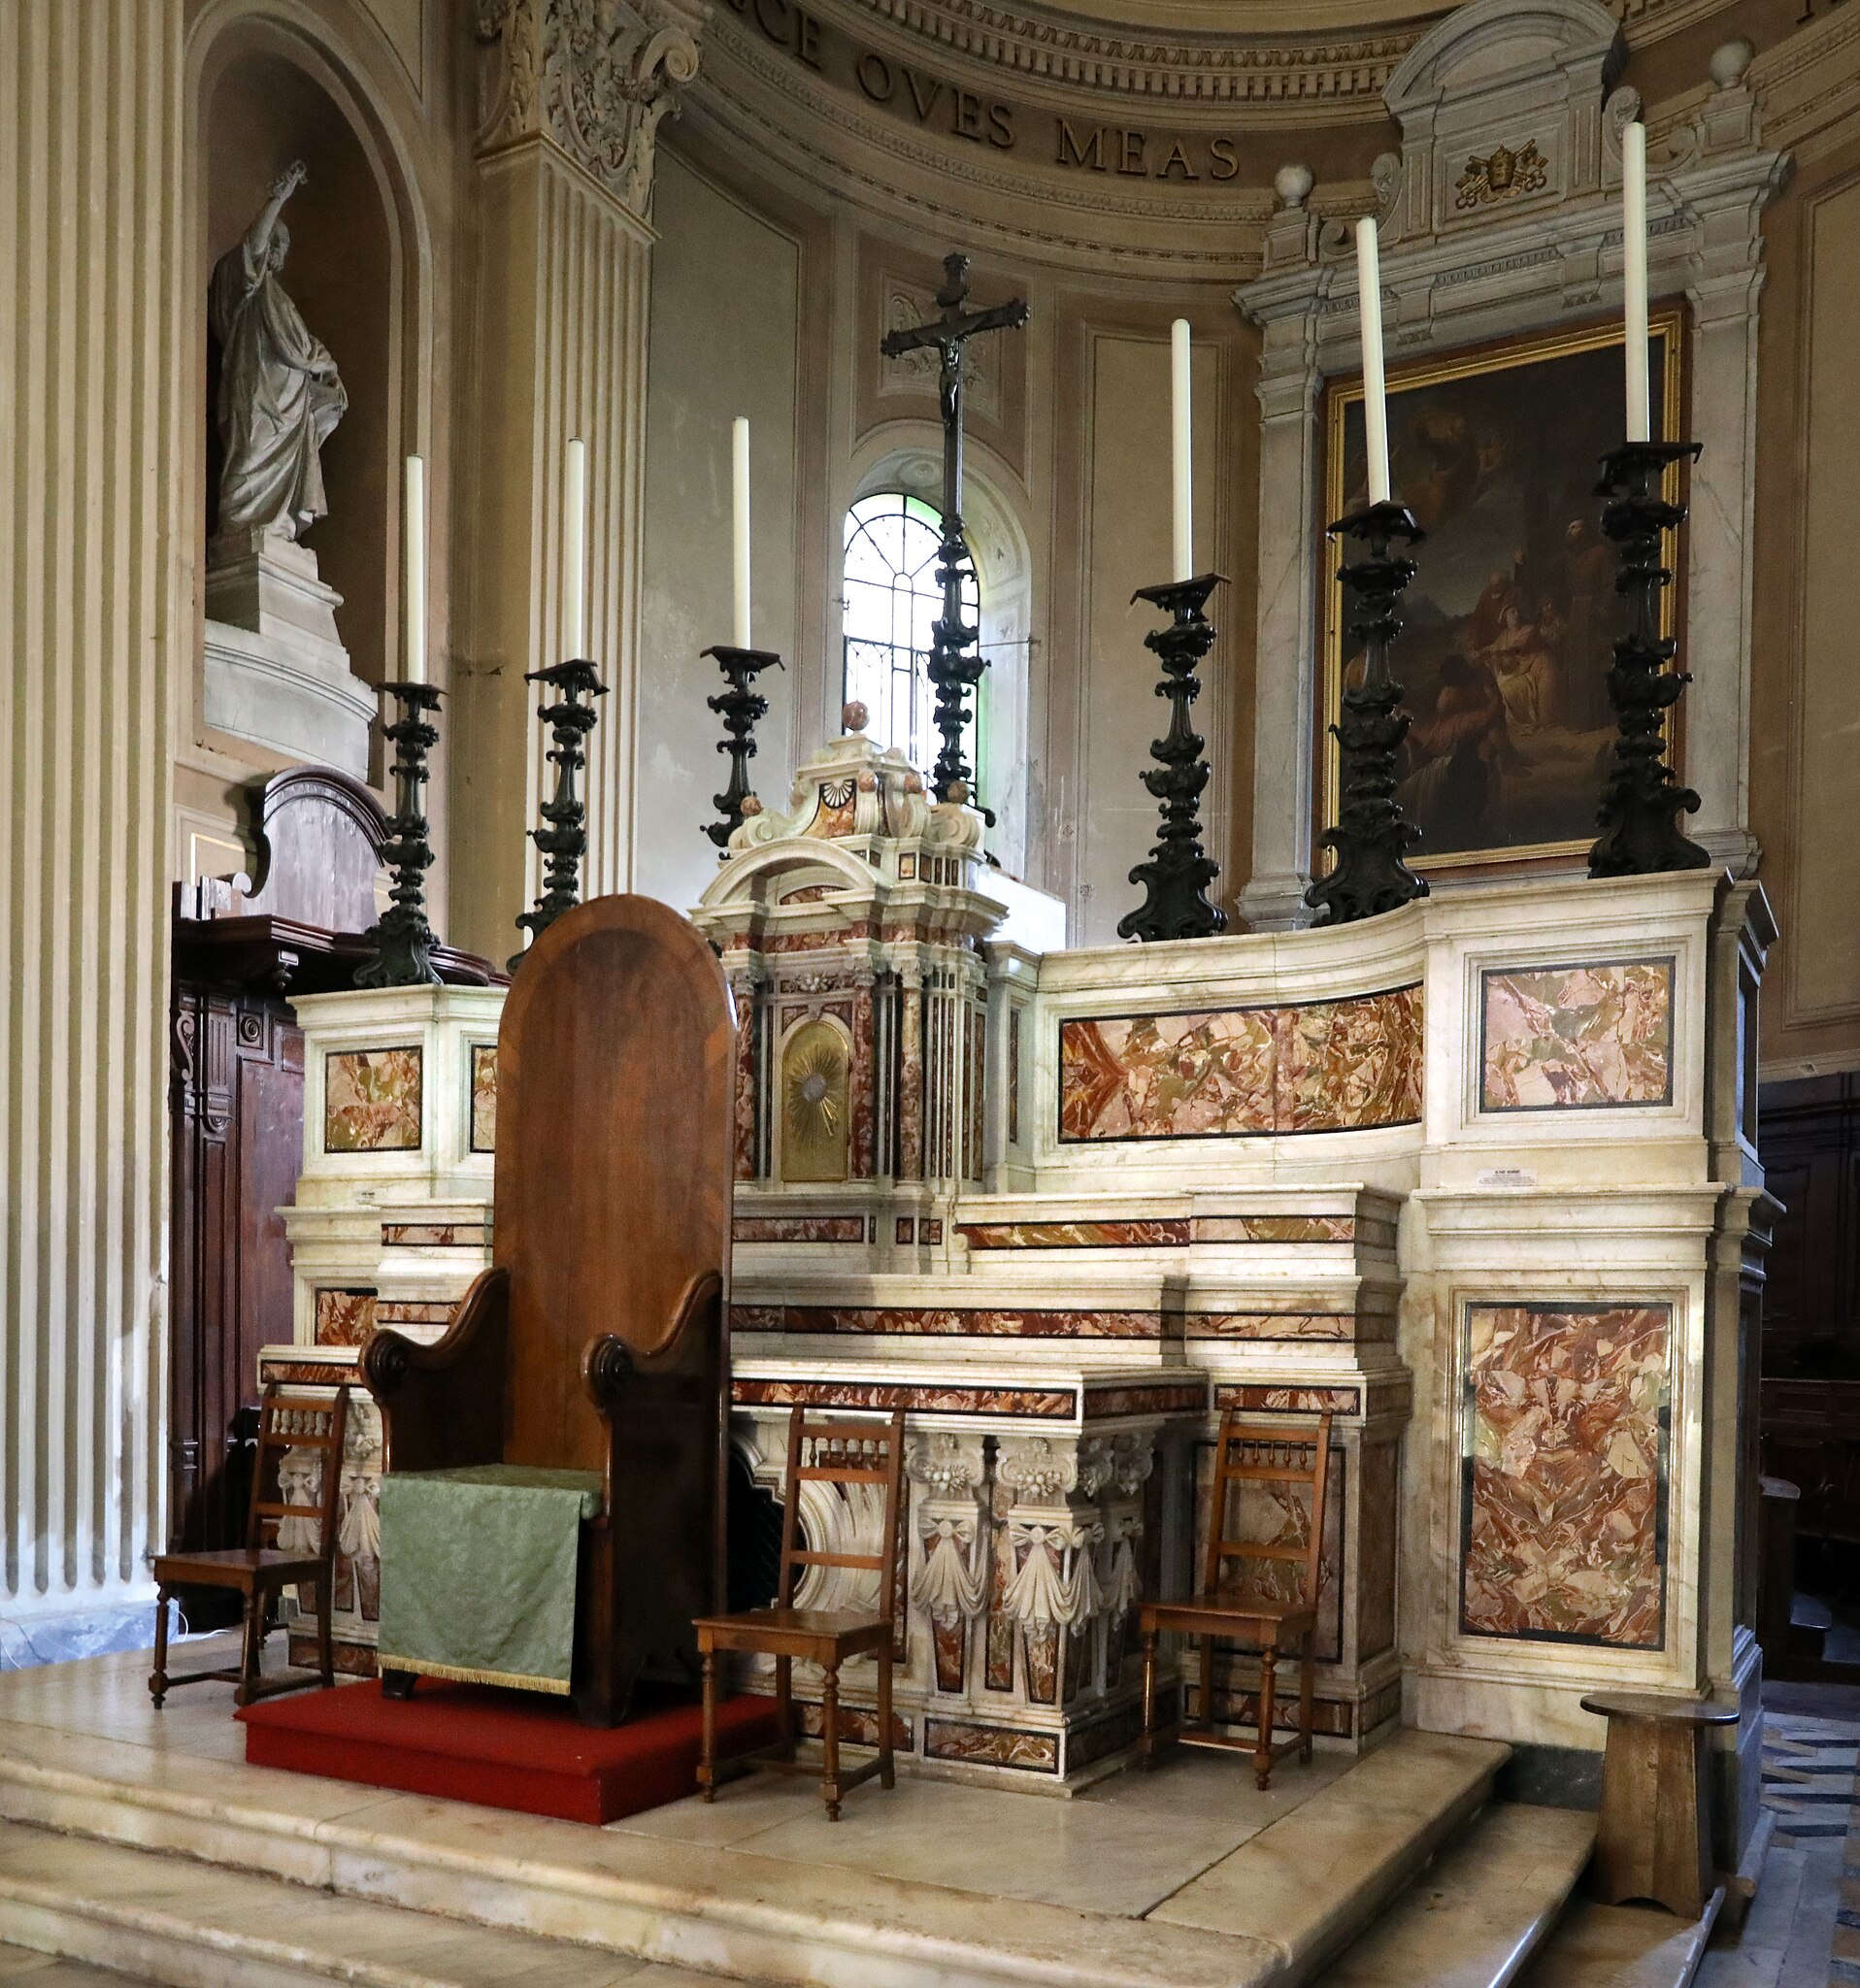 Le maître-autel de la cathédrale de Massa. Photo : Francesco Bini